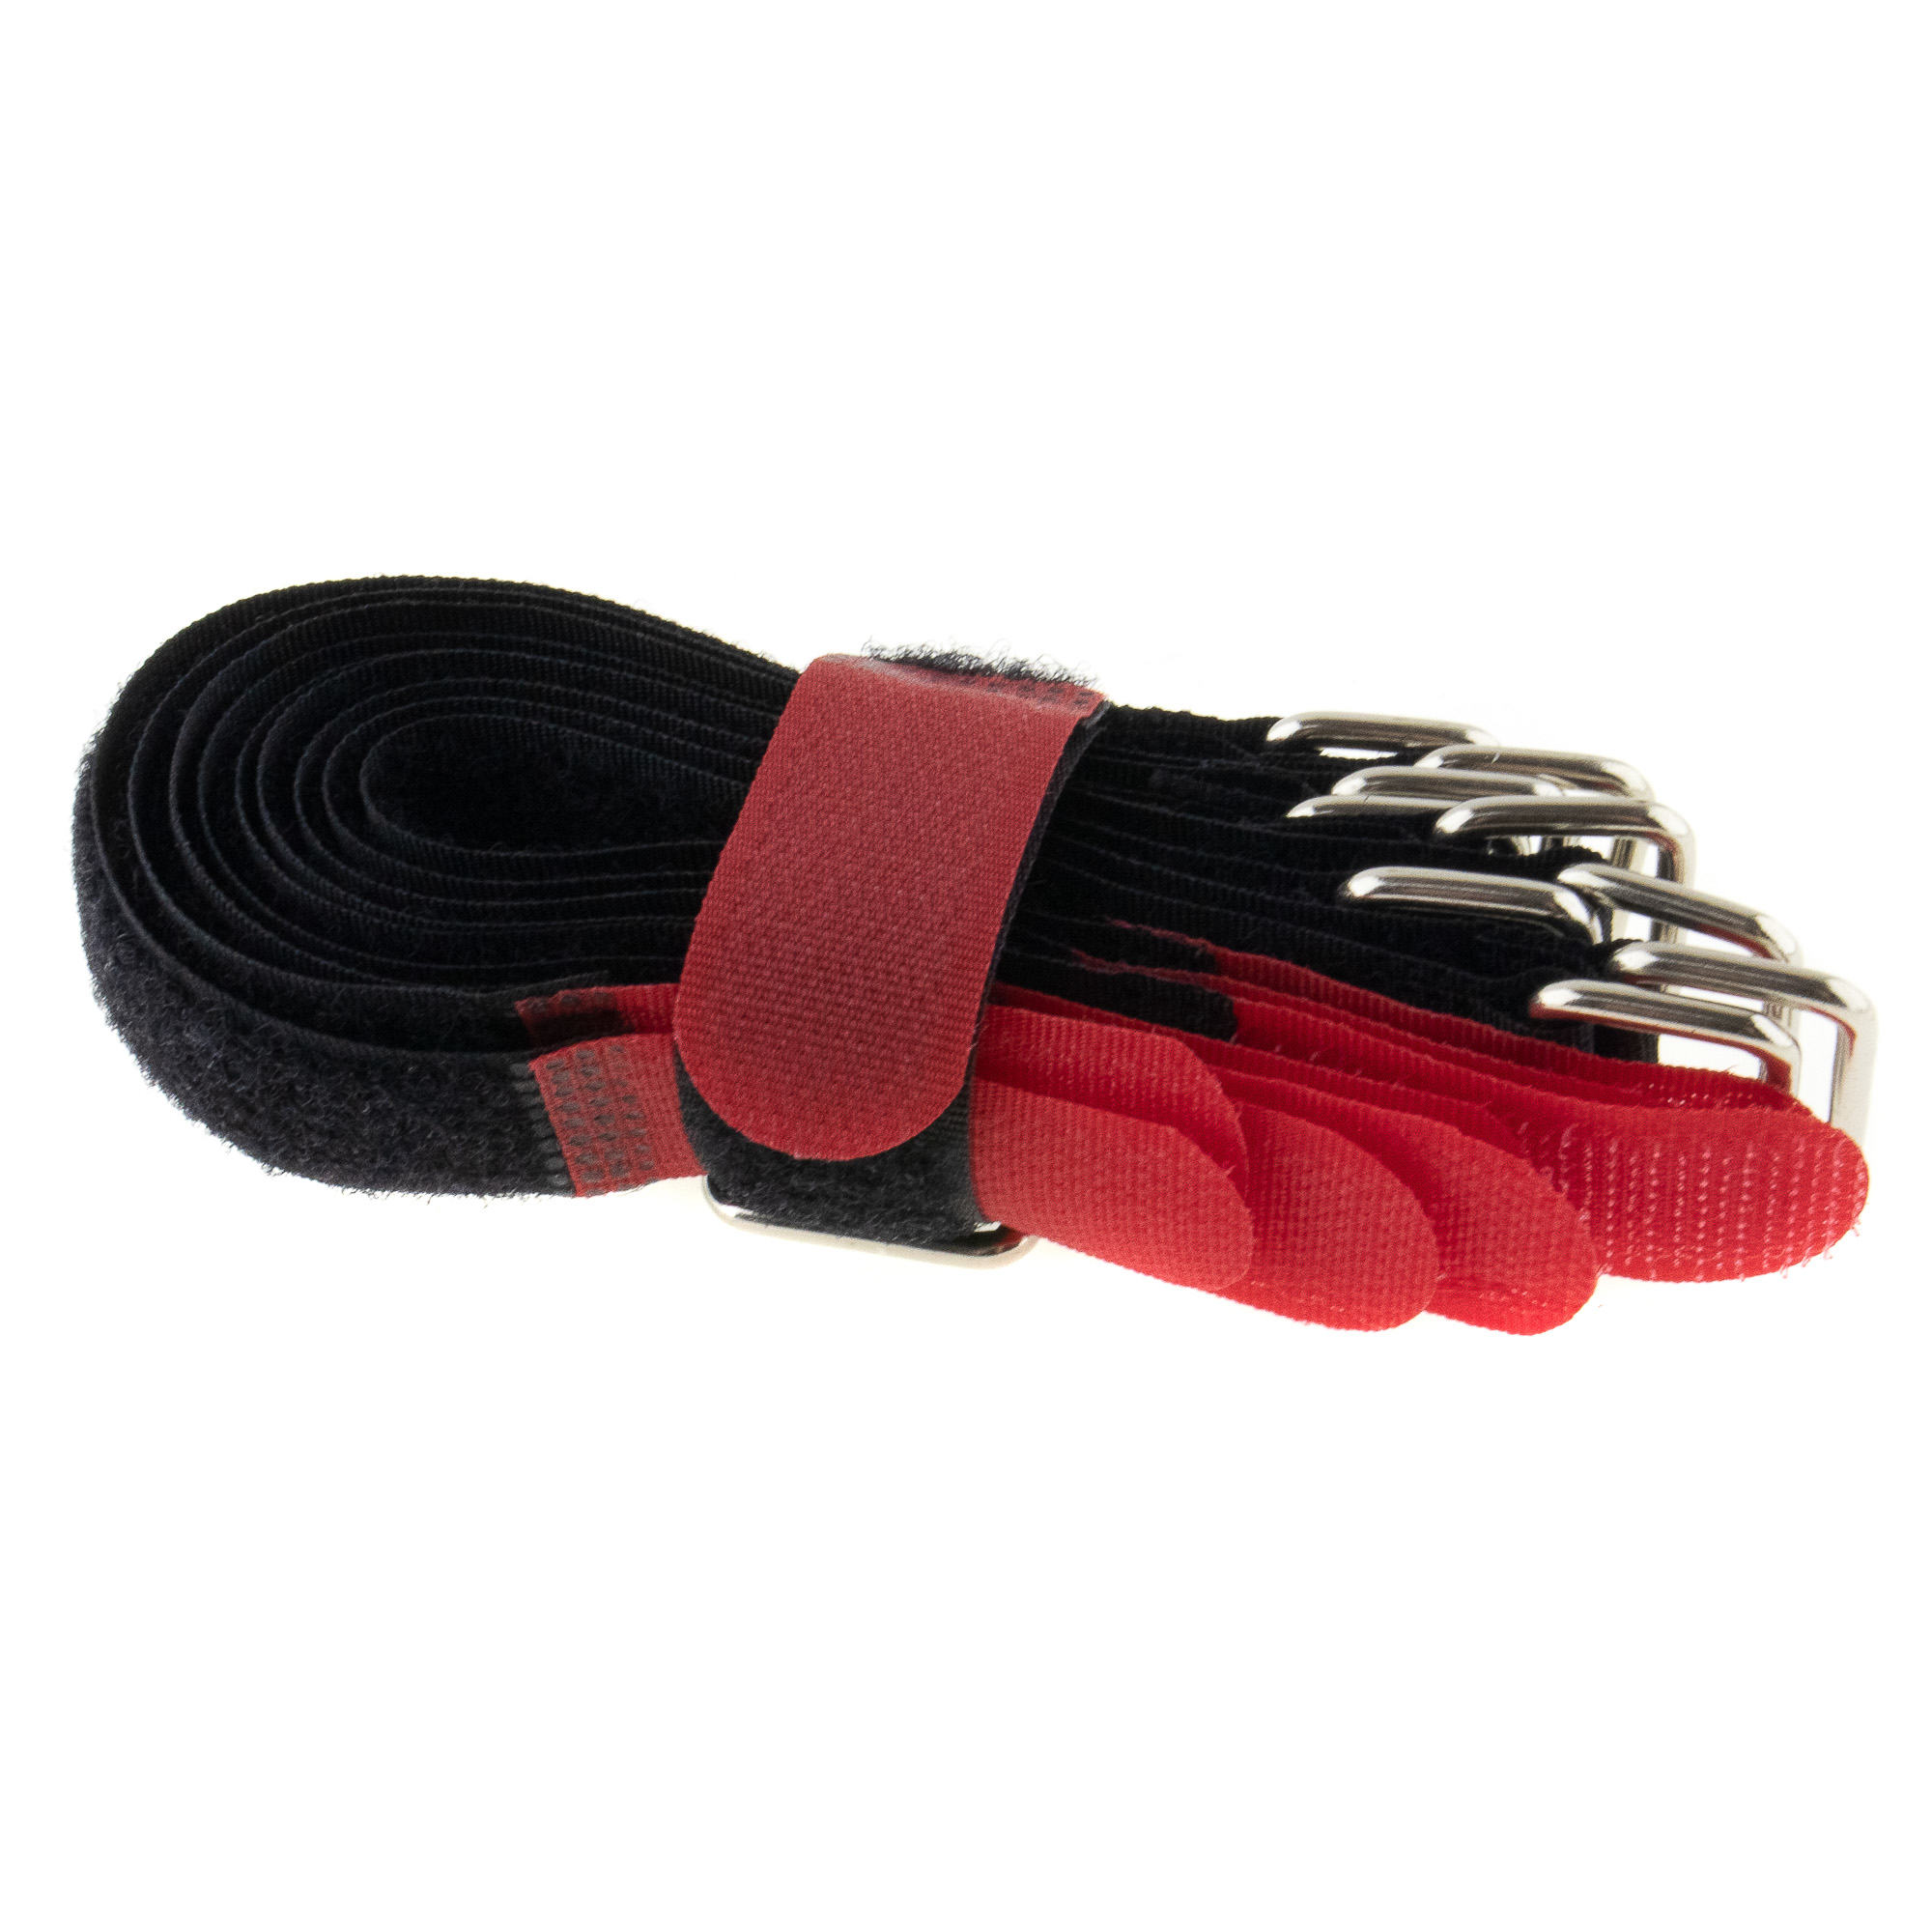 Hook-and-loop strap 200x20, black/red, crossed, 10PCS